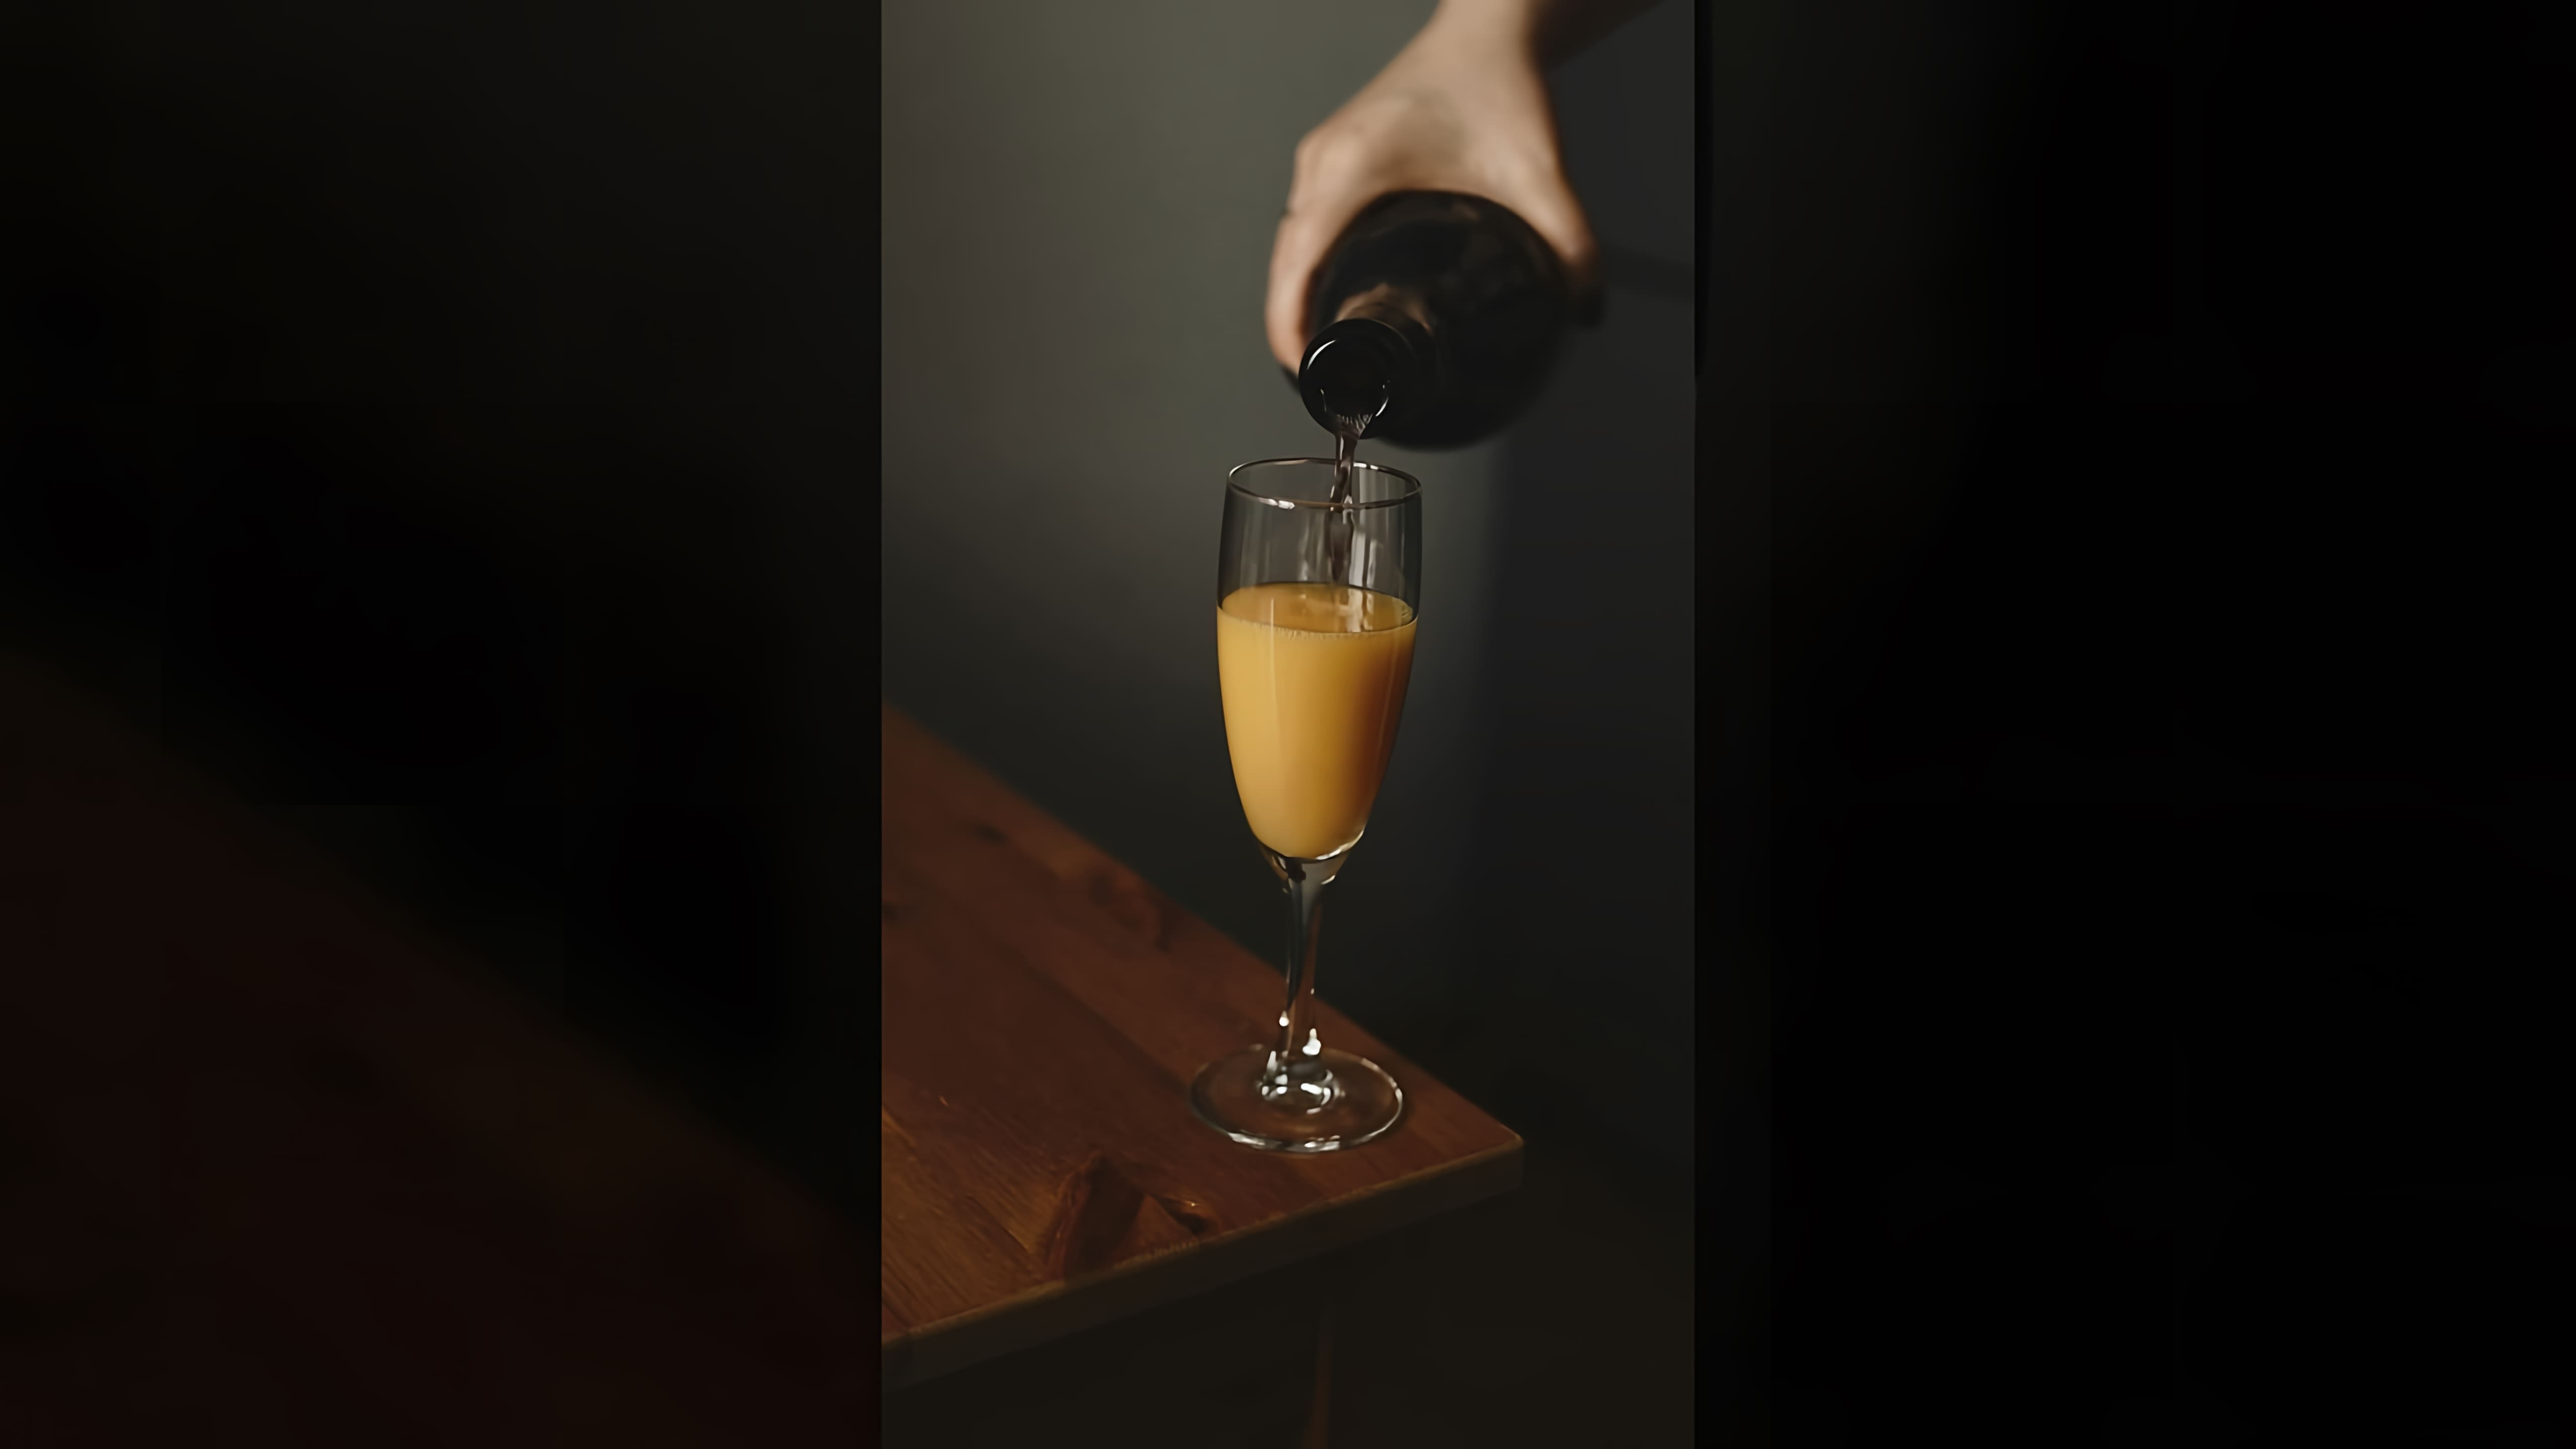 В этом видео-ролике рассказывается о том, как приготовить коктейль "Мимоза" с использованием апельсинового сока и шампанского